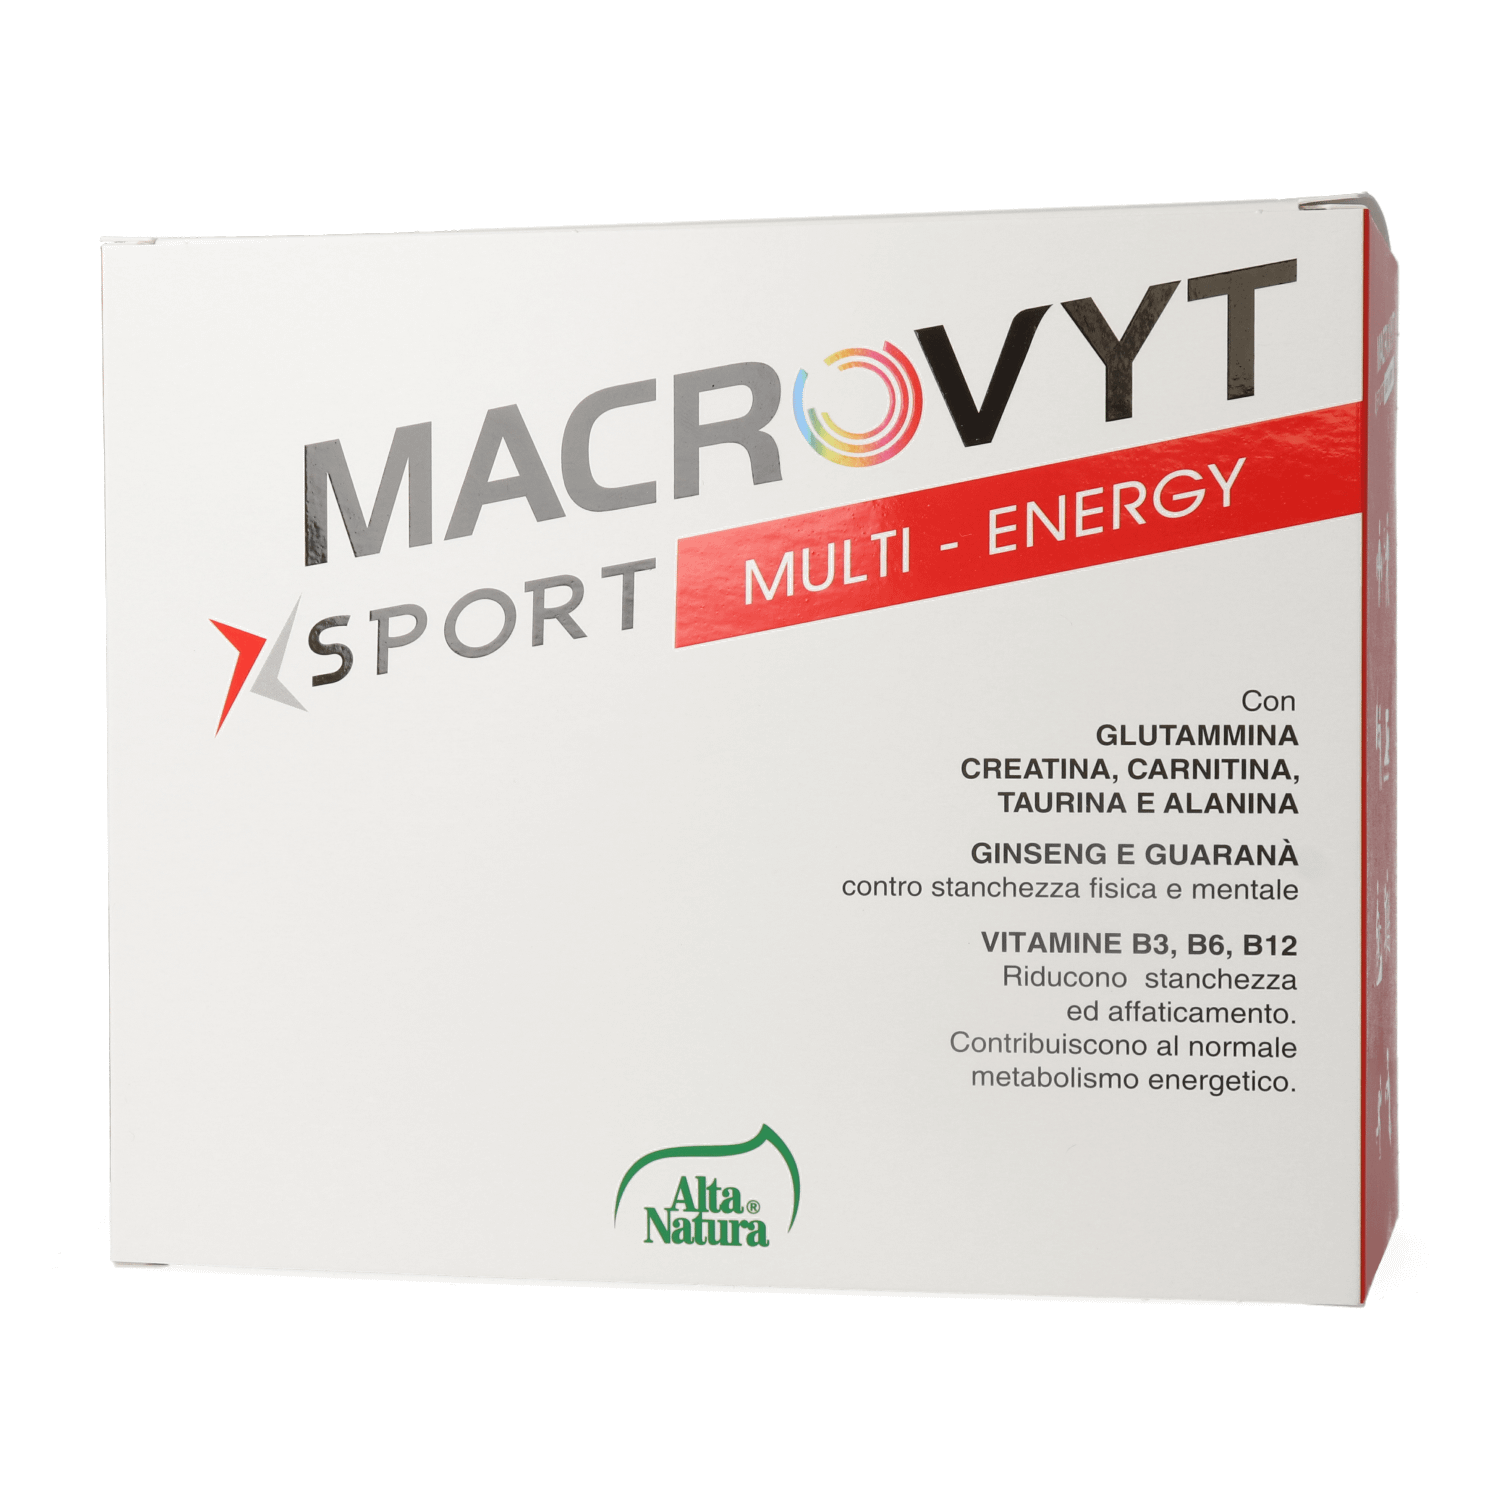 Macrovyt Sport Multi Energy